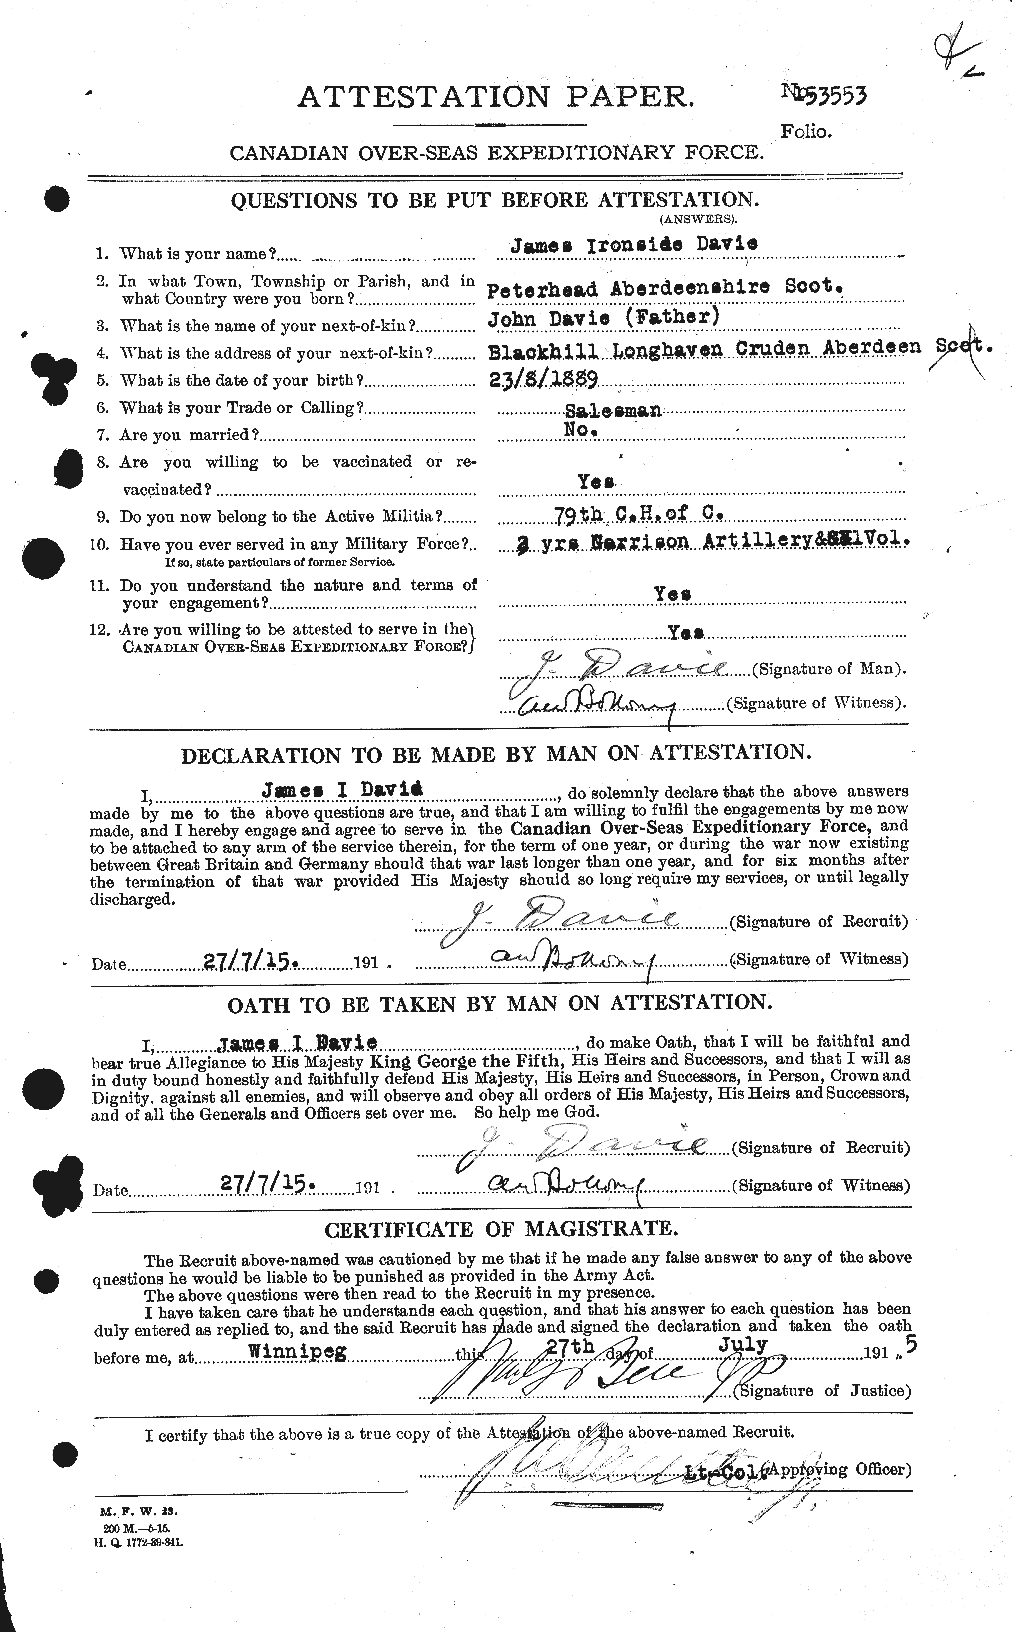 Dossiers du Personnel de la Première Guerre mondiale - CEC 278834a